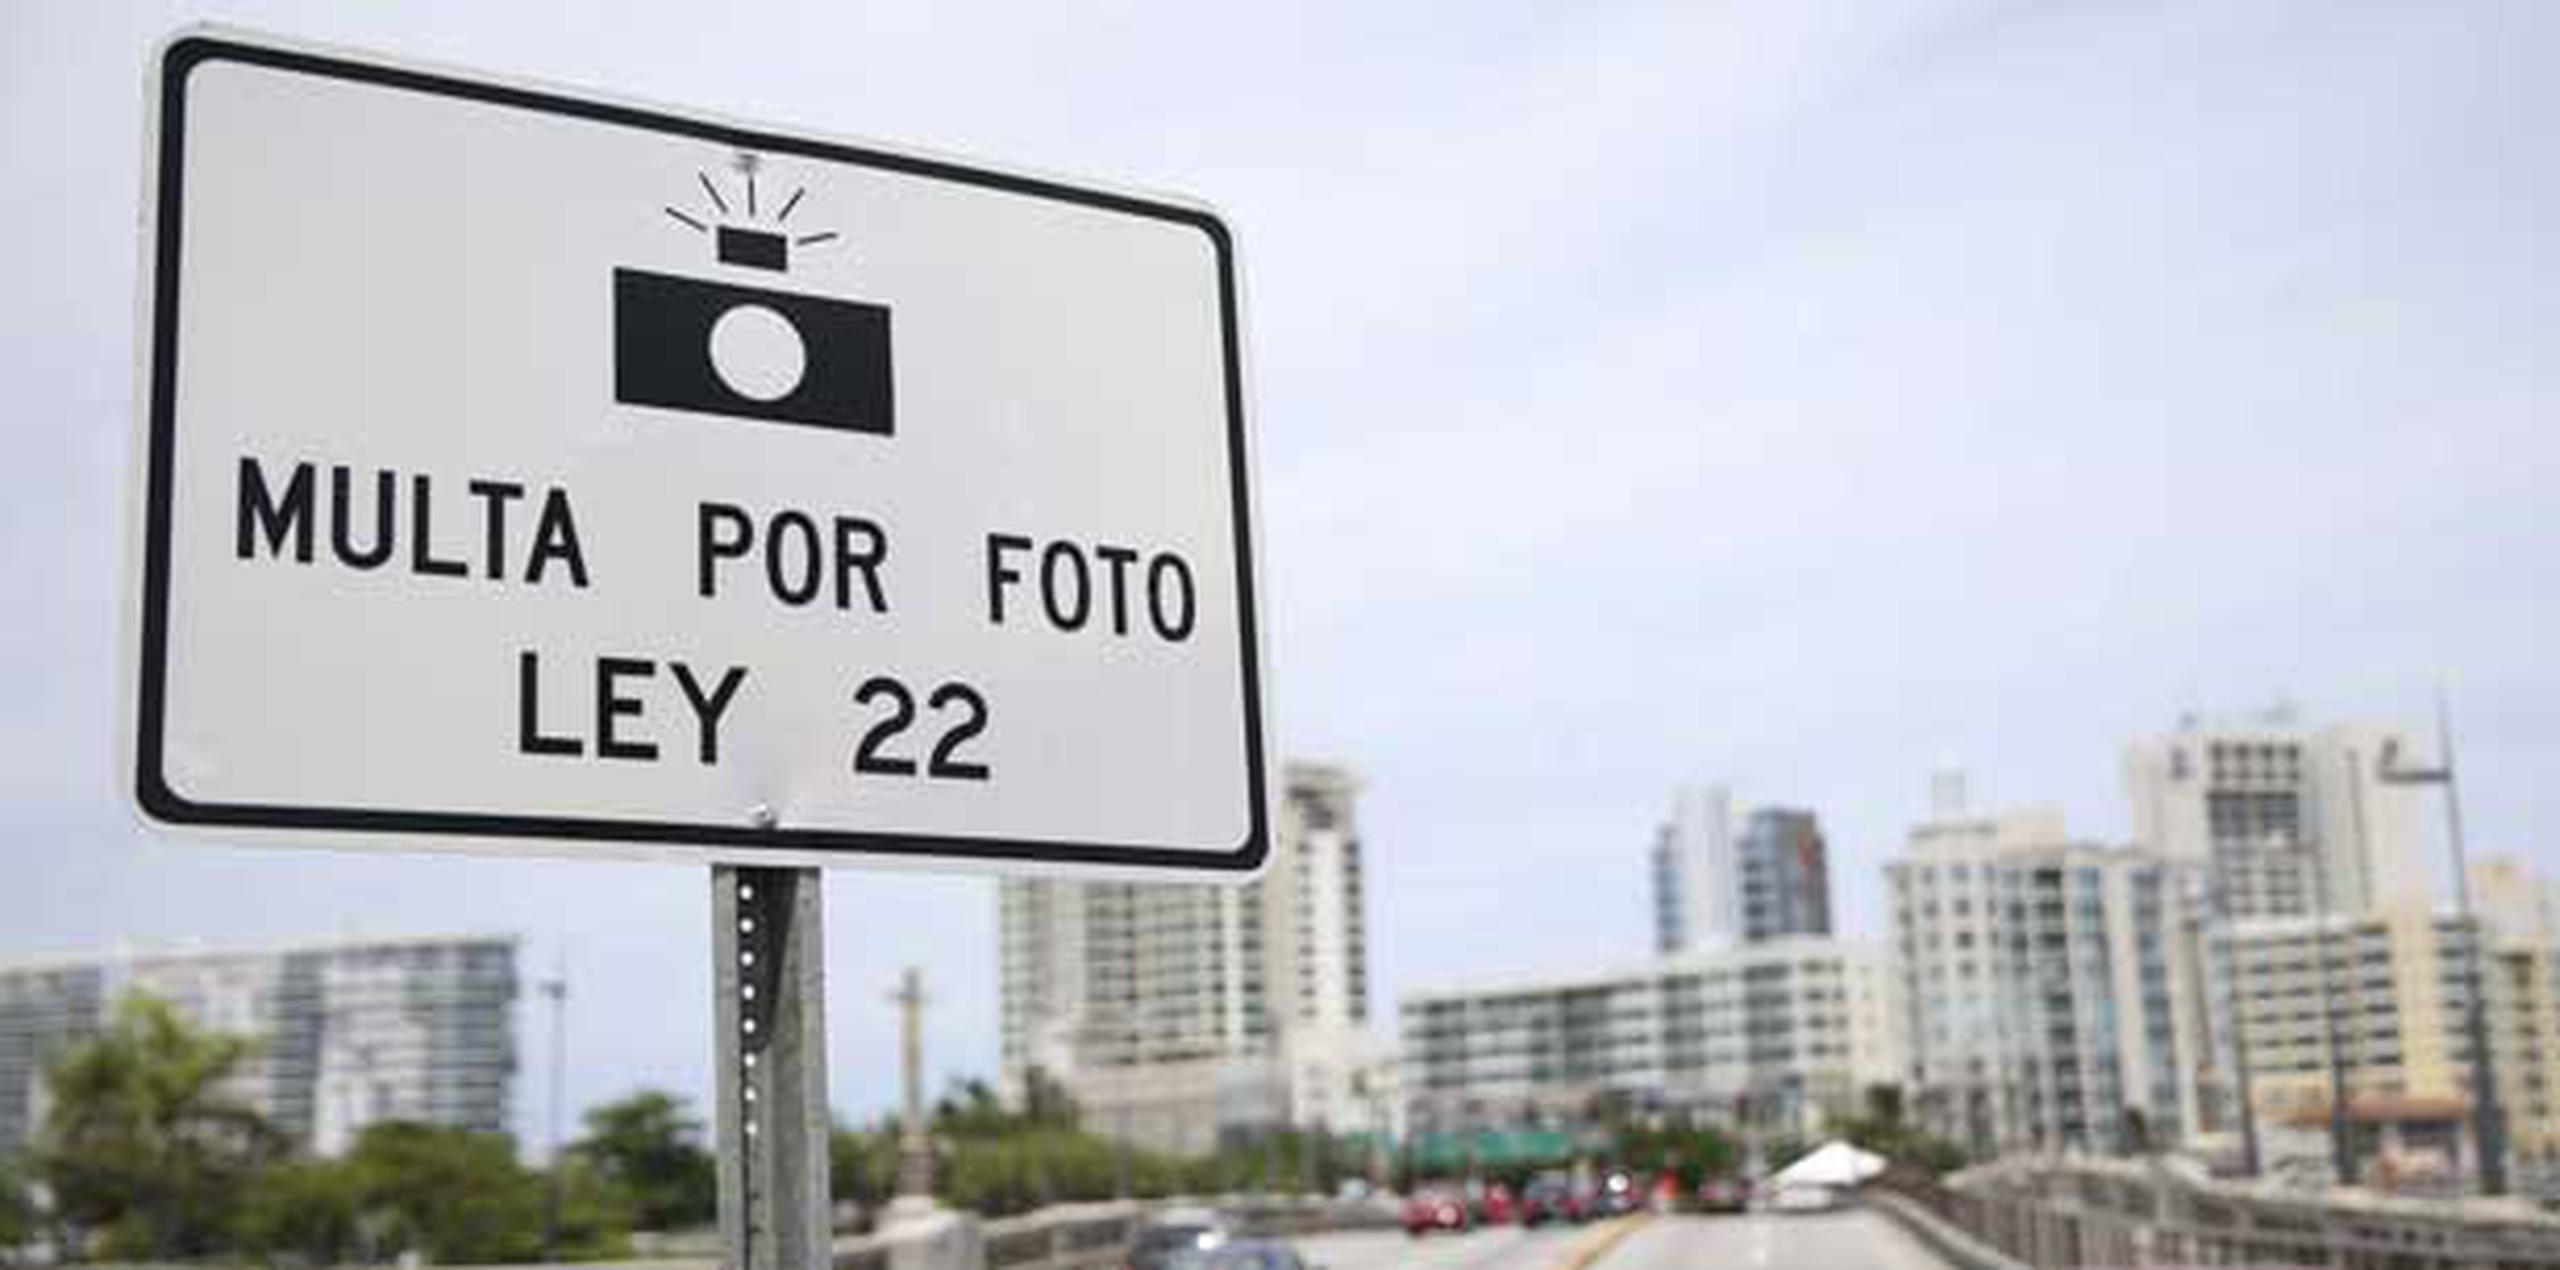 Ante las declaraciones de Nazario, Torres se limitó a reiterar que las fotomultas de Yauco están “no conforme con la Ley 22 (de Tránsito)”. (Archivo)